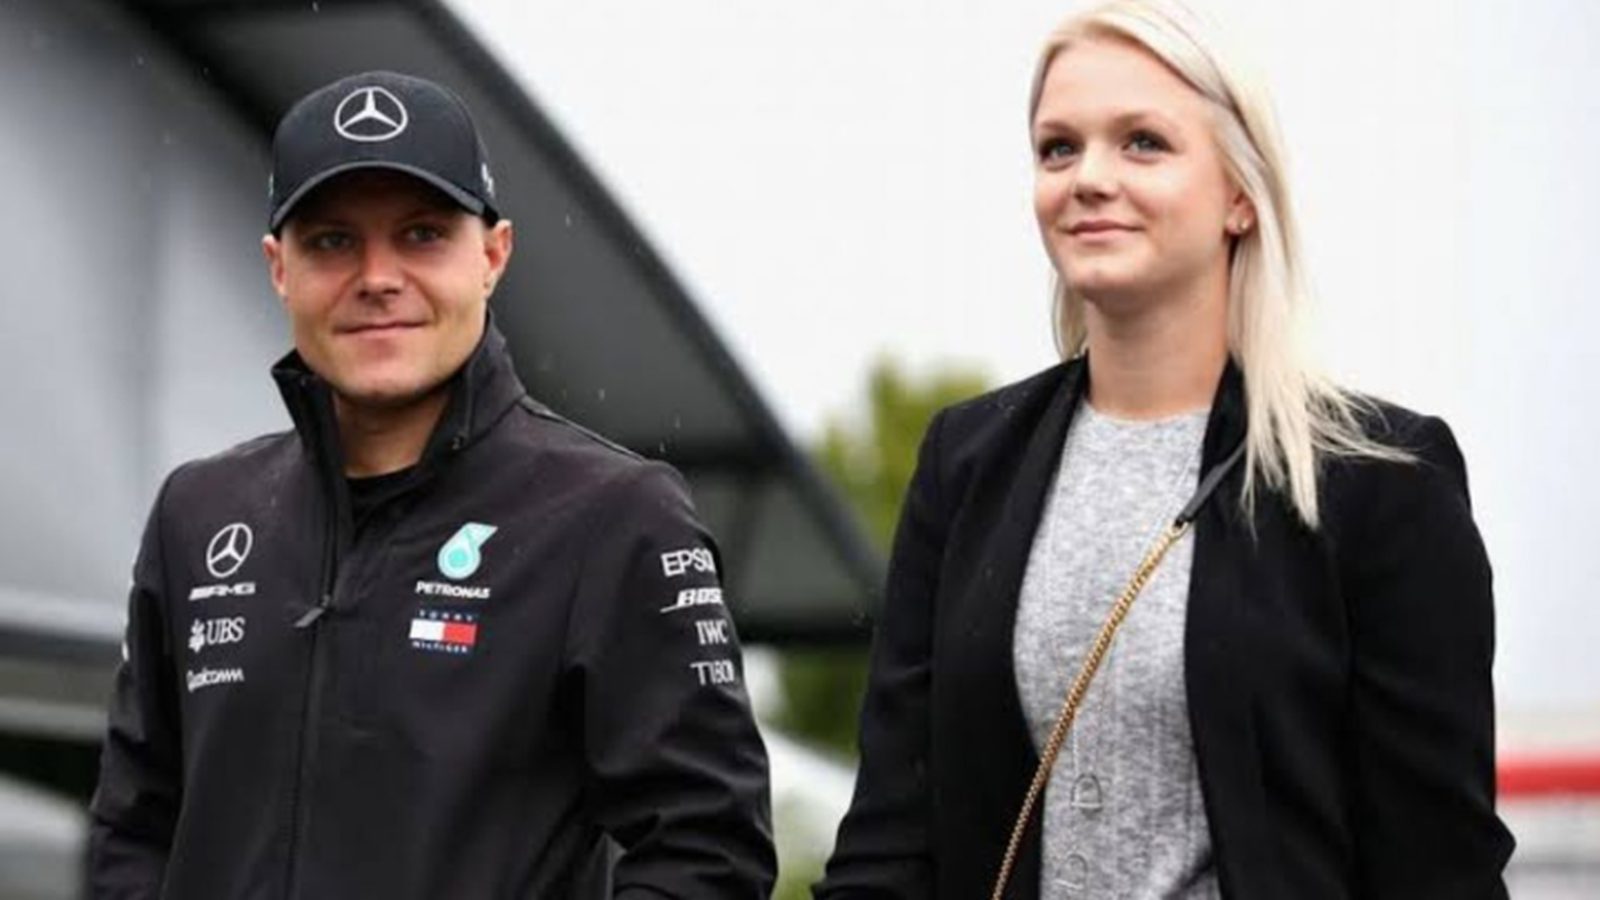 Piloto da Mercedes, Valtteri Bottas foi casado com a nadadora Emilia Pikkarainen. O matrimônio durou três anos e terminou em 2019